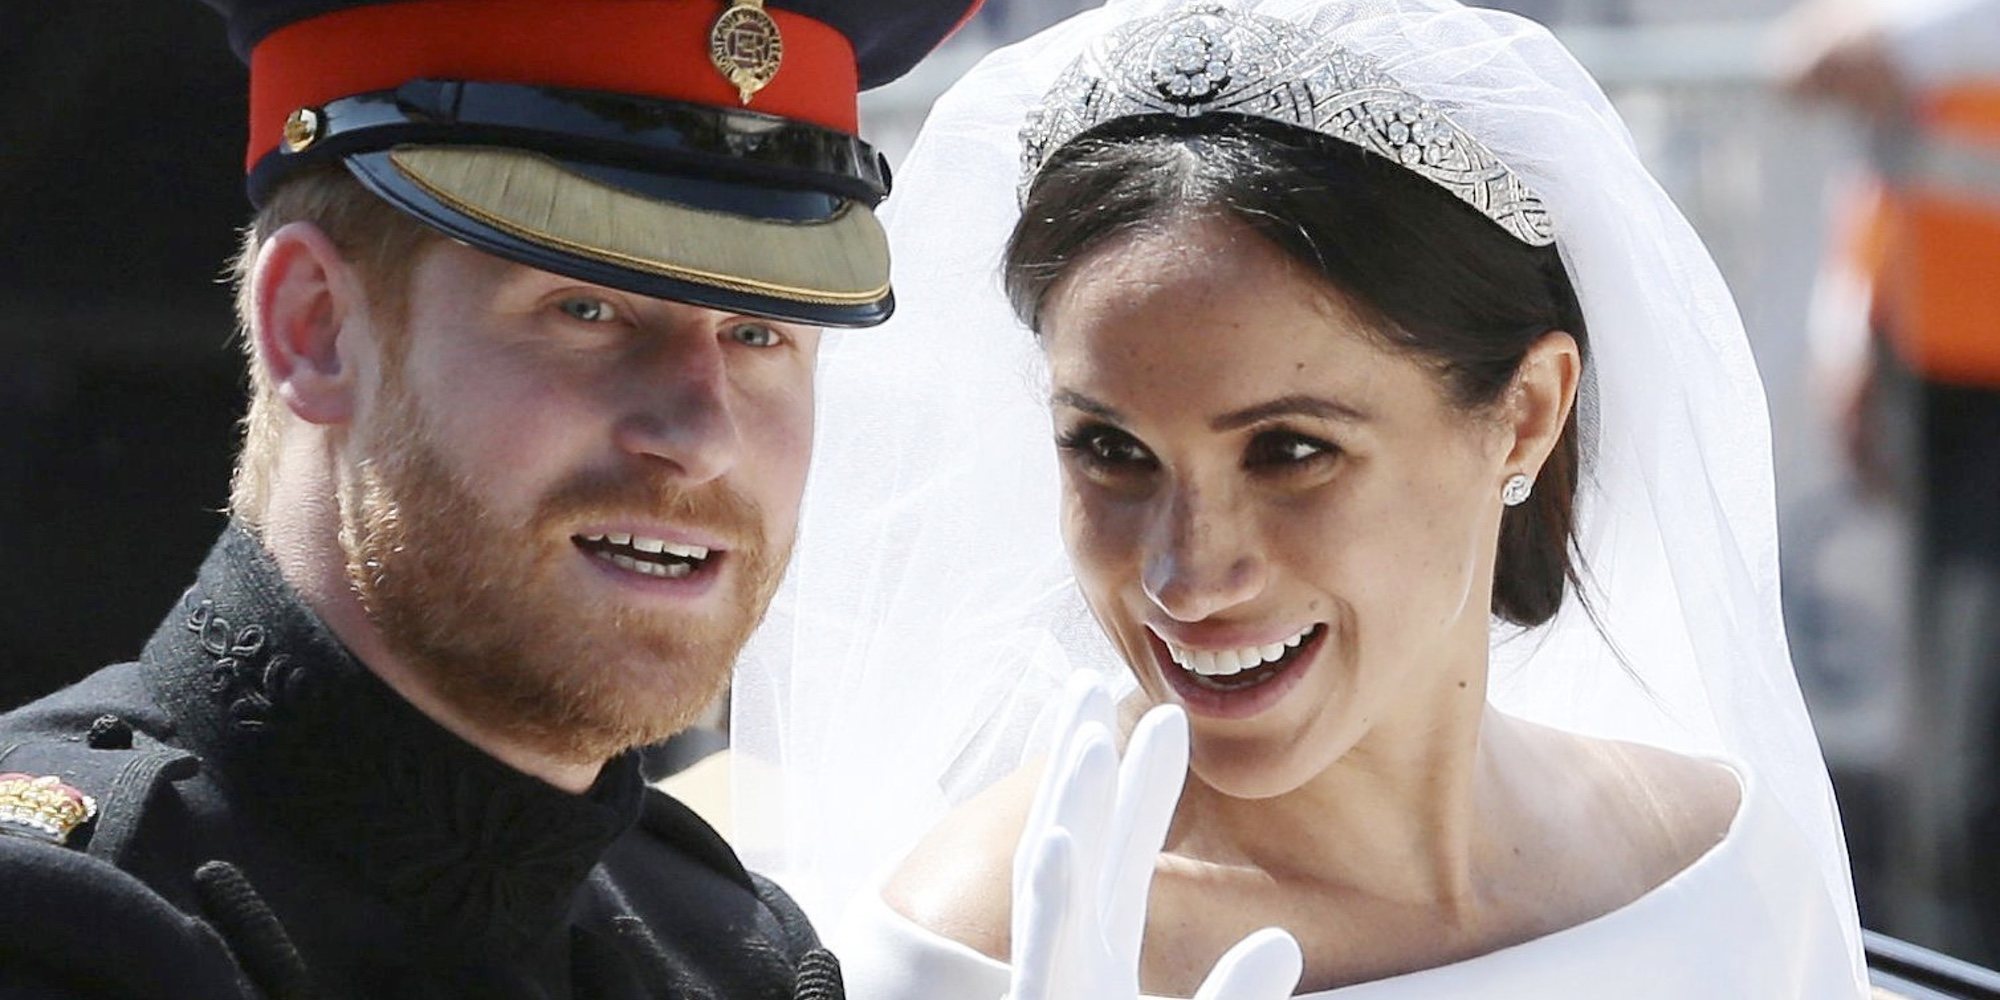 La celebración del tercer aniversario de boda del Príncipe Harry y Meghan Markle marca el camino que quieren seguir